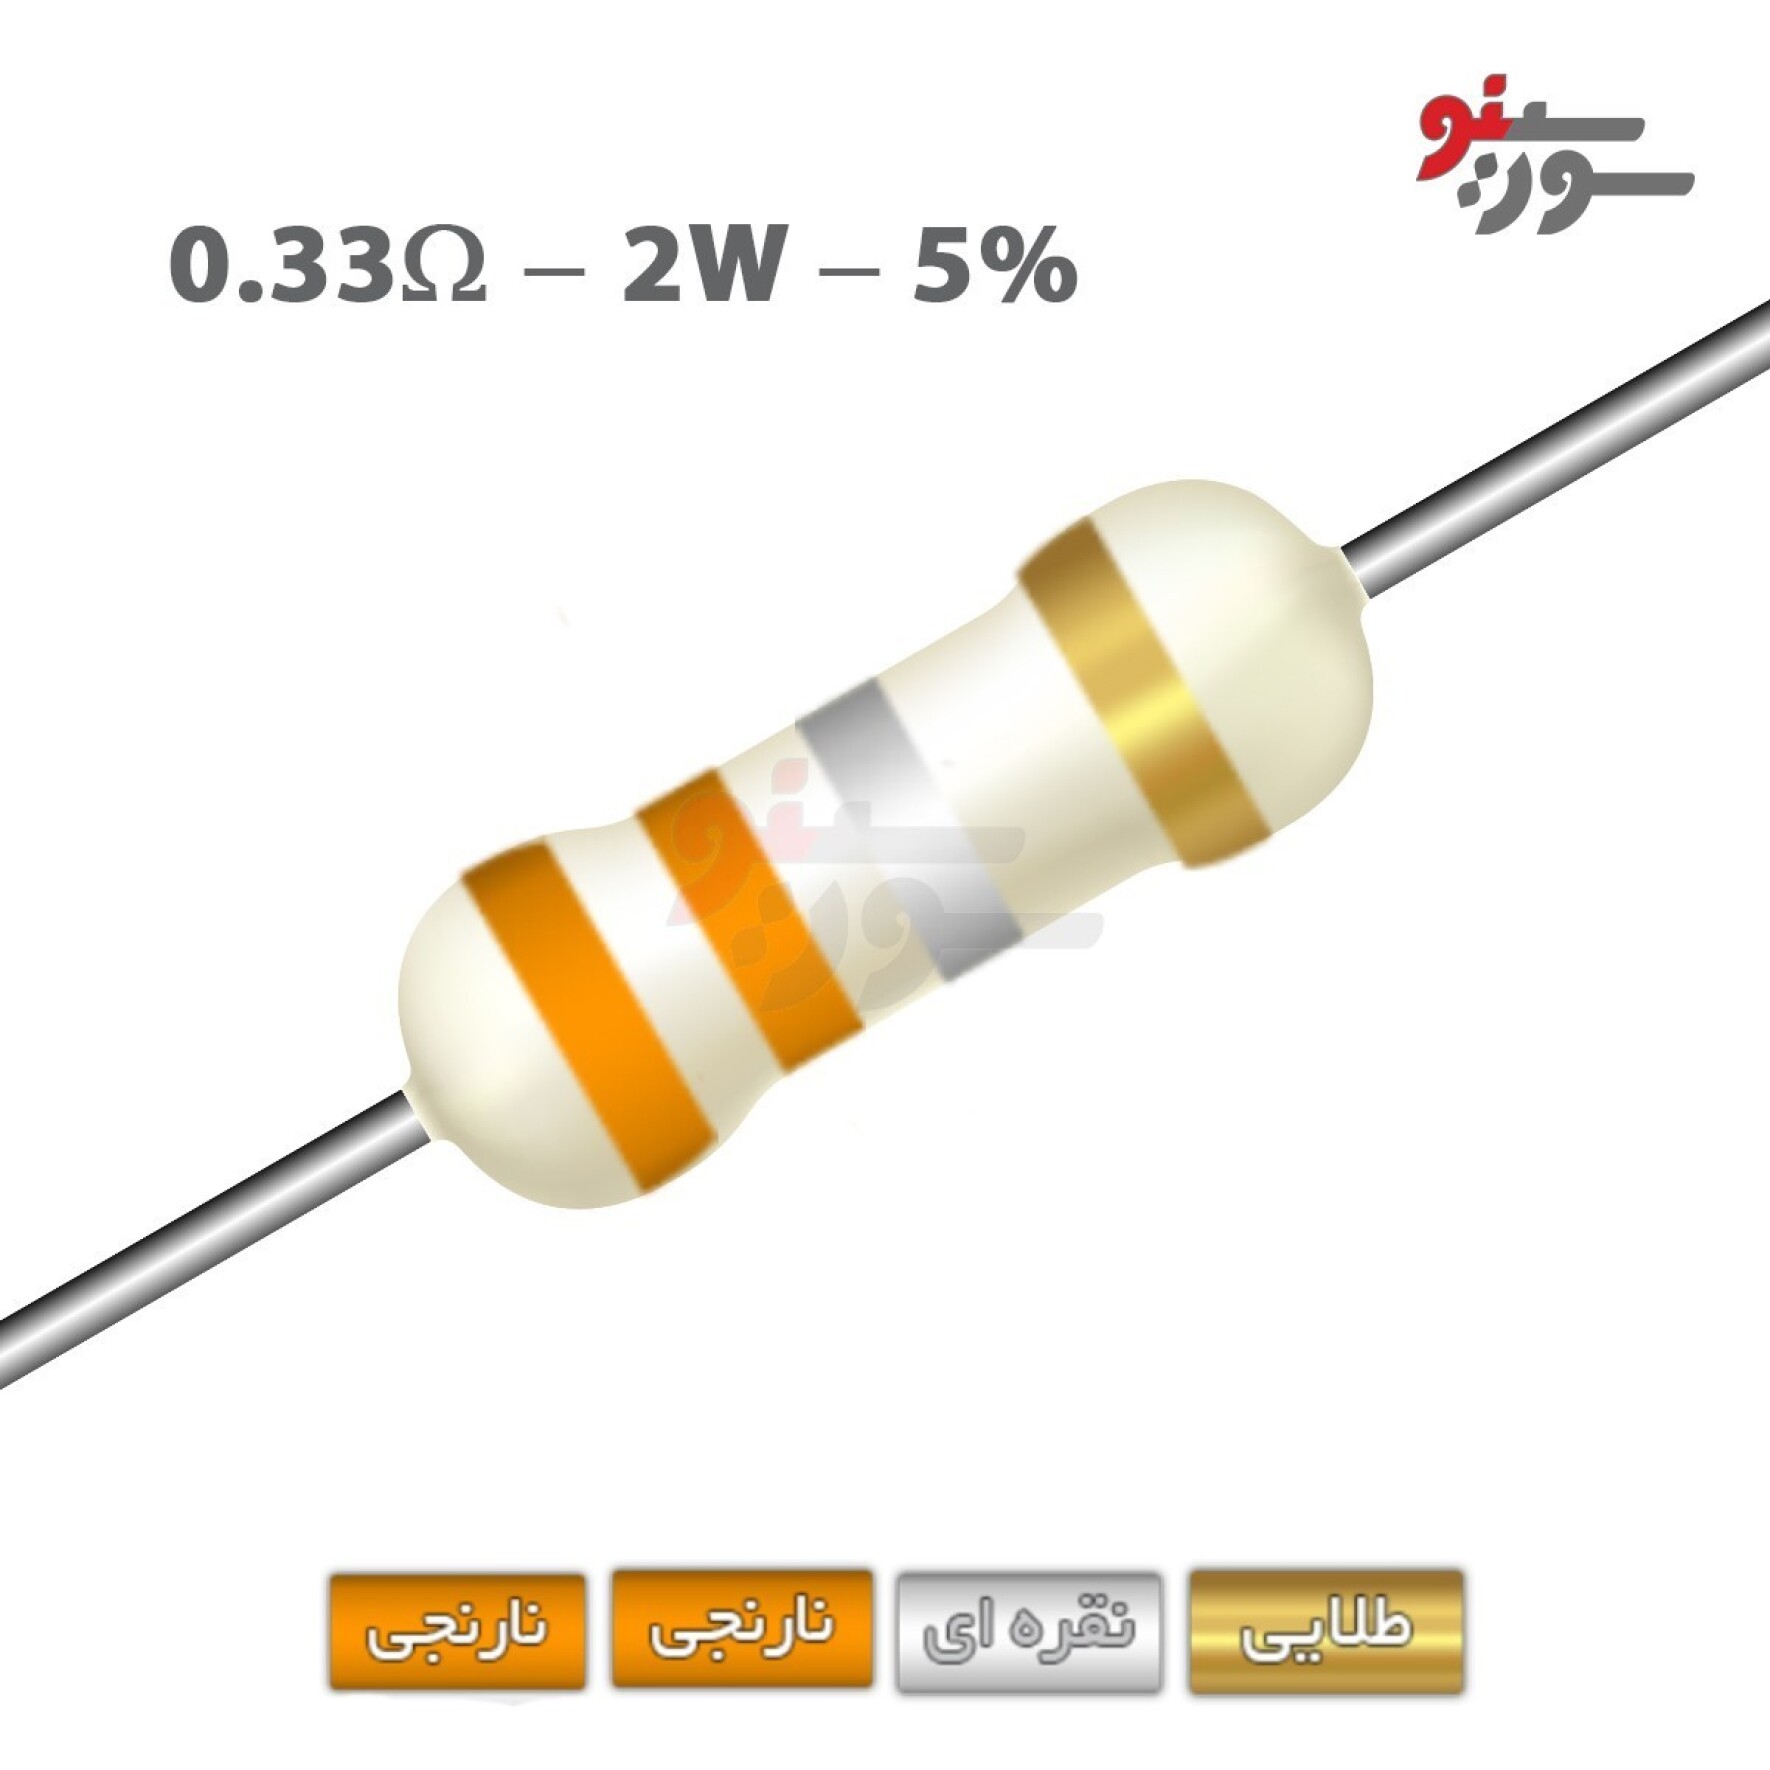 مقاومت 0.33 اهم 2 وات (0R33-2W-5%)